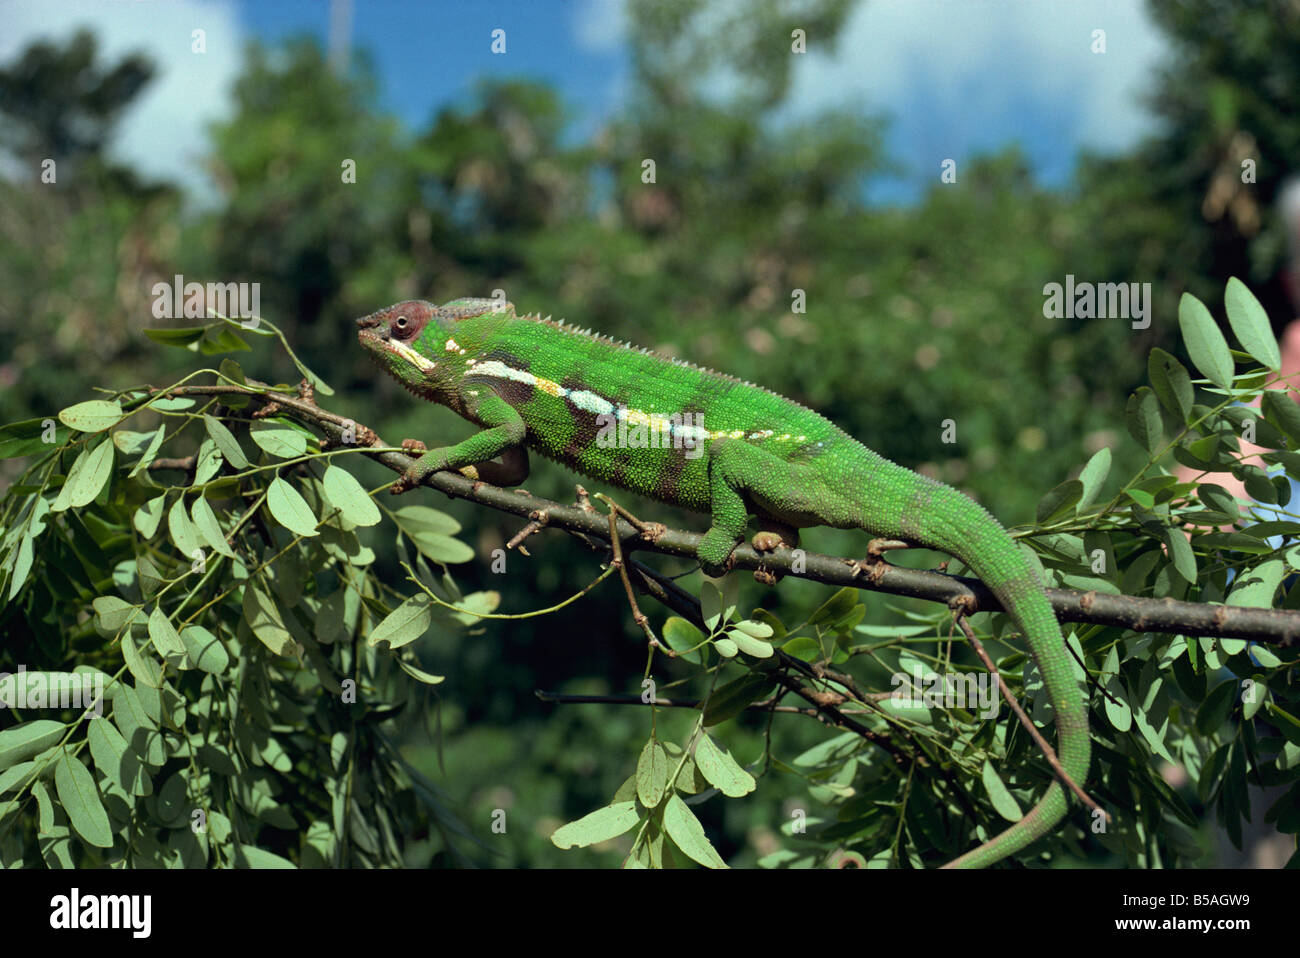 Chameleon Madagascar Africa Stock Photo